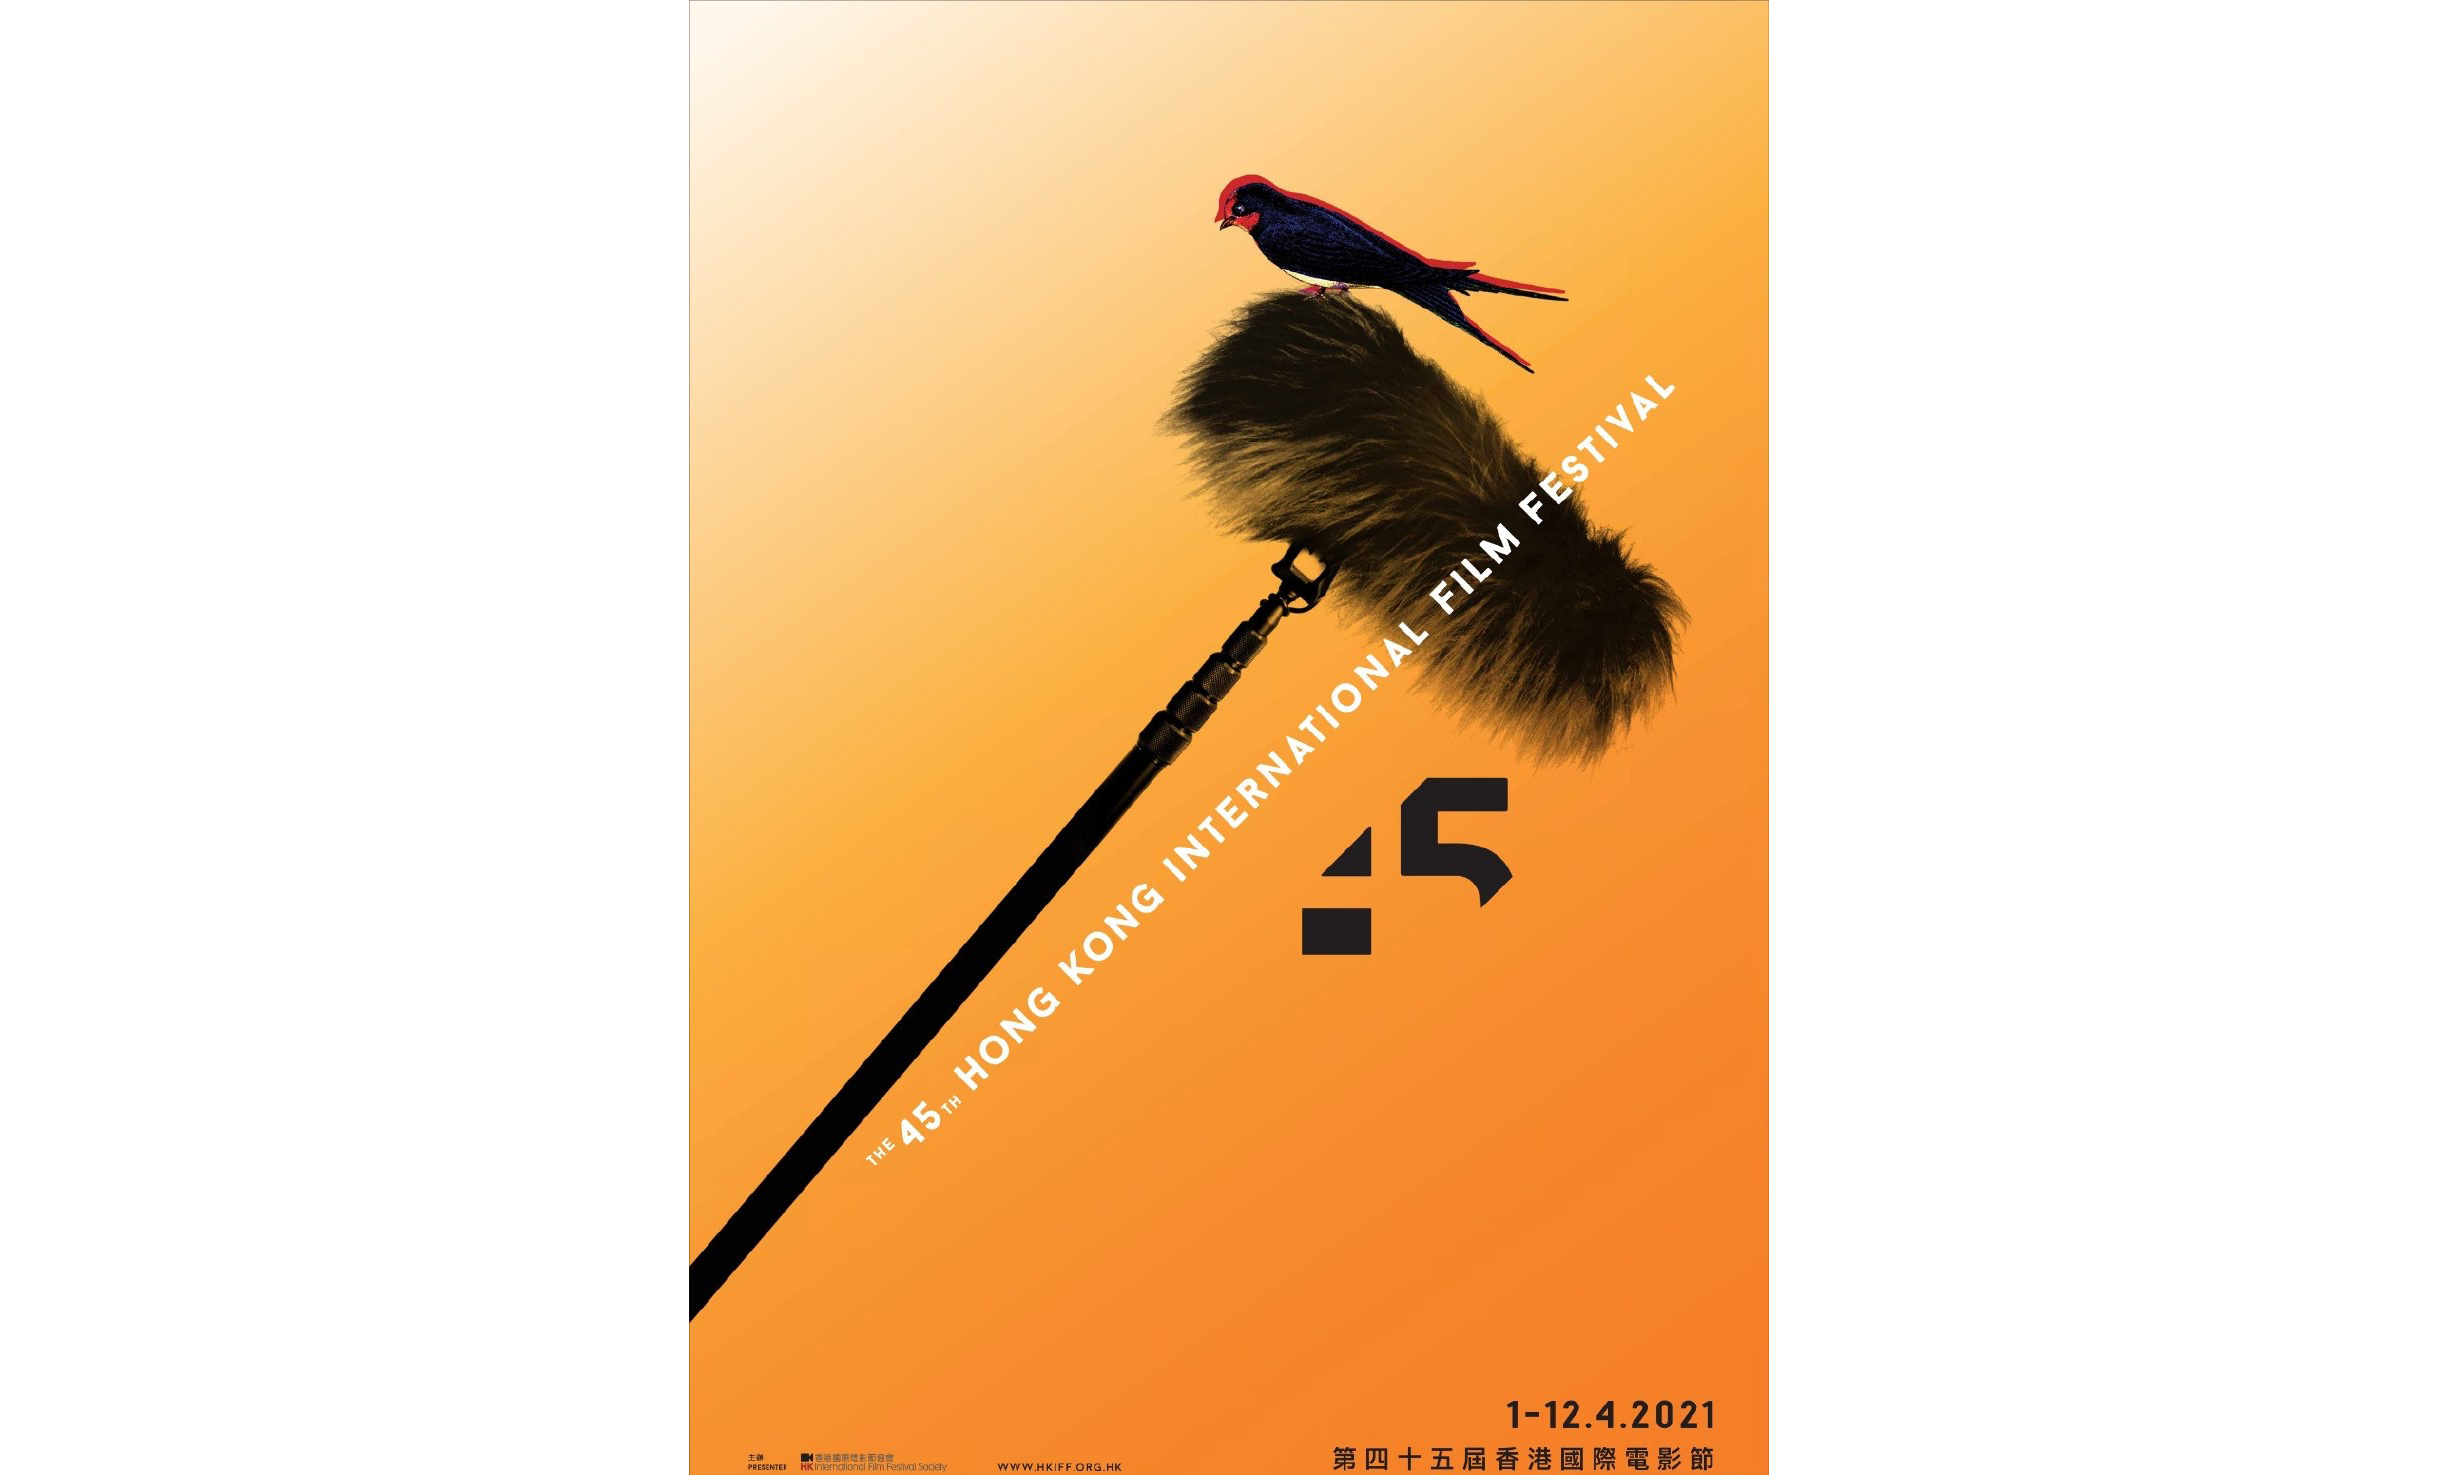 第 45 届香港国际电影节主题设计公布